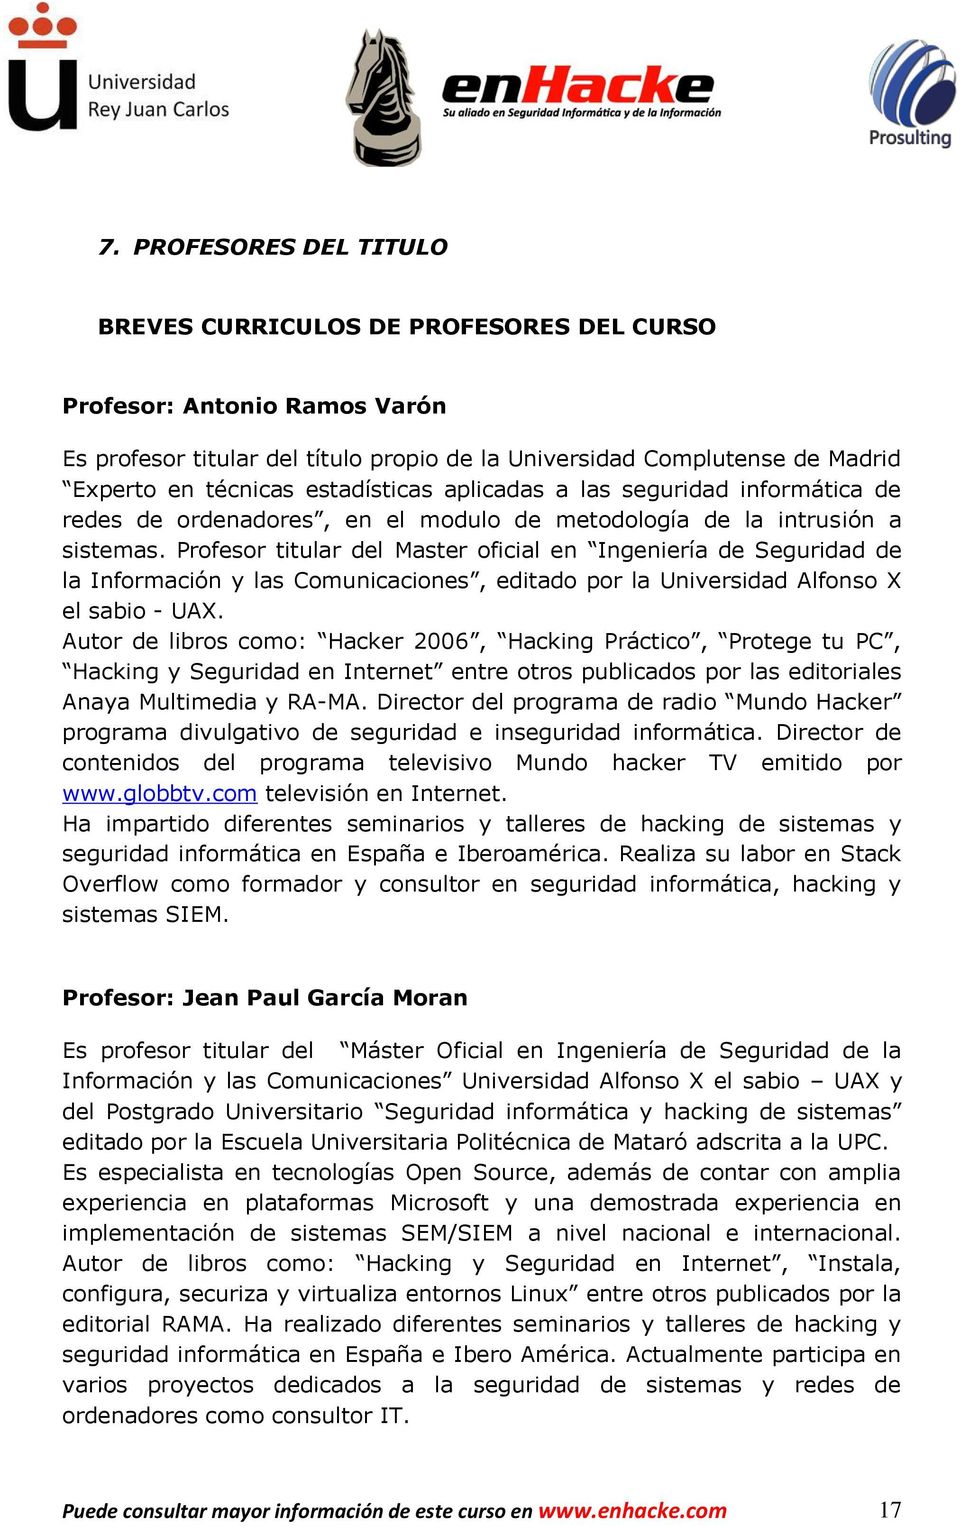 Profesor titular del Master oficial en Ingeniería de Seguridad de la Información y las Comunicaciones, editado por la Universidad Alfonso X el sabio - UAX.